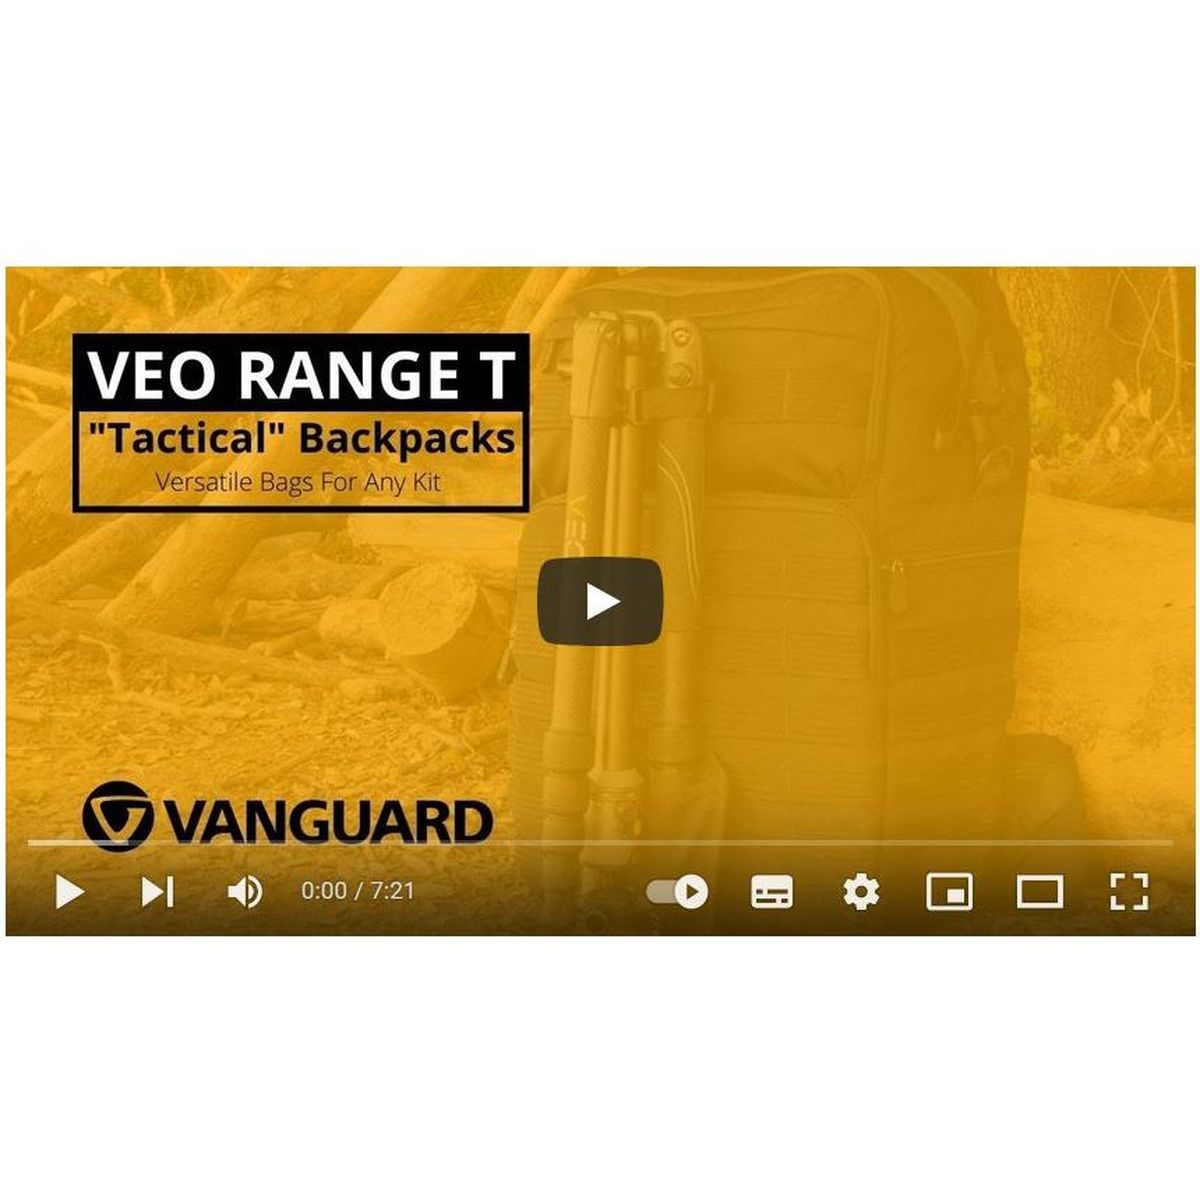 Vanguard VEO Range T 45M BG